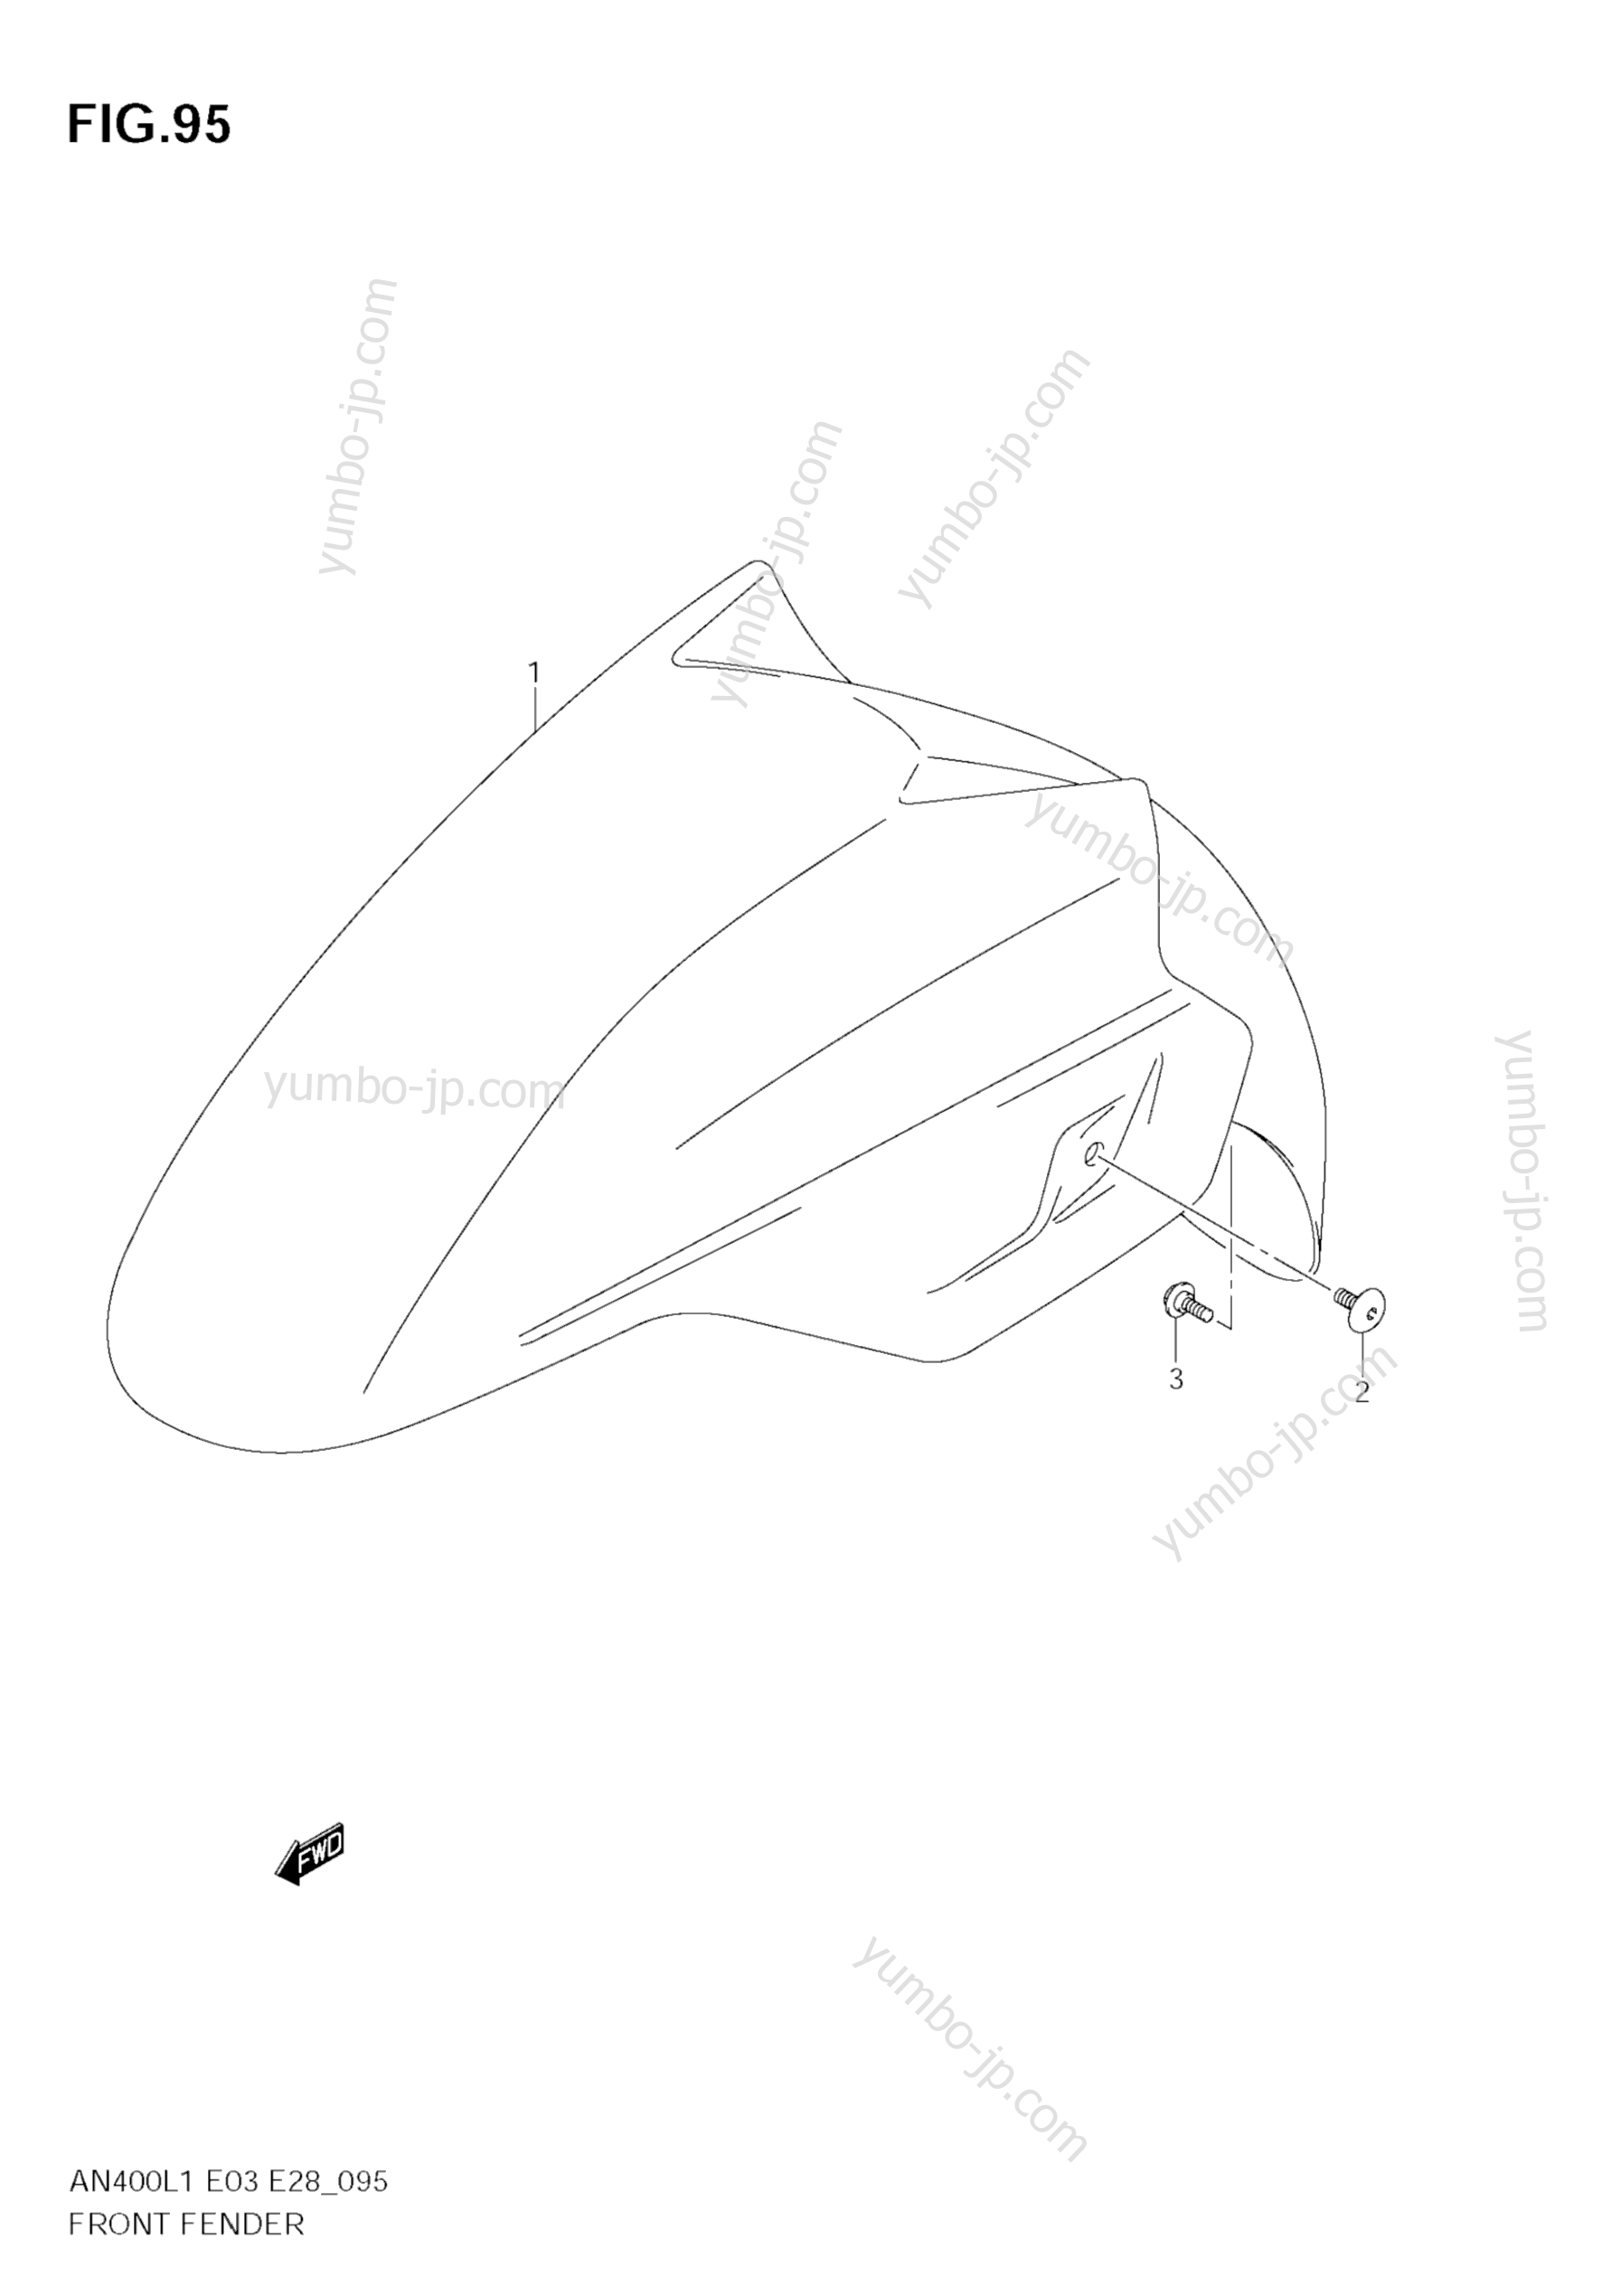 FRONT FENDER (AN400 L1 E3) для скутеров SUZUKI Burgman (AN400) 2011 г.